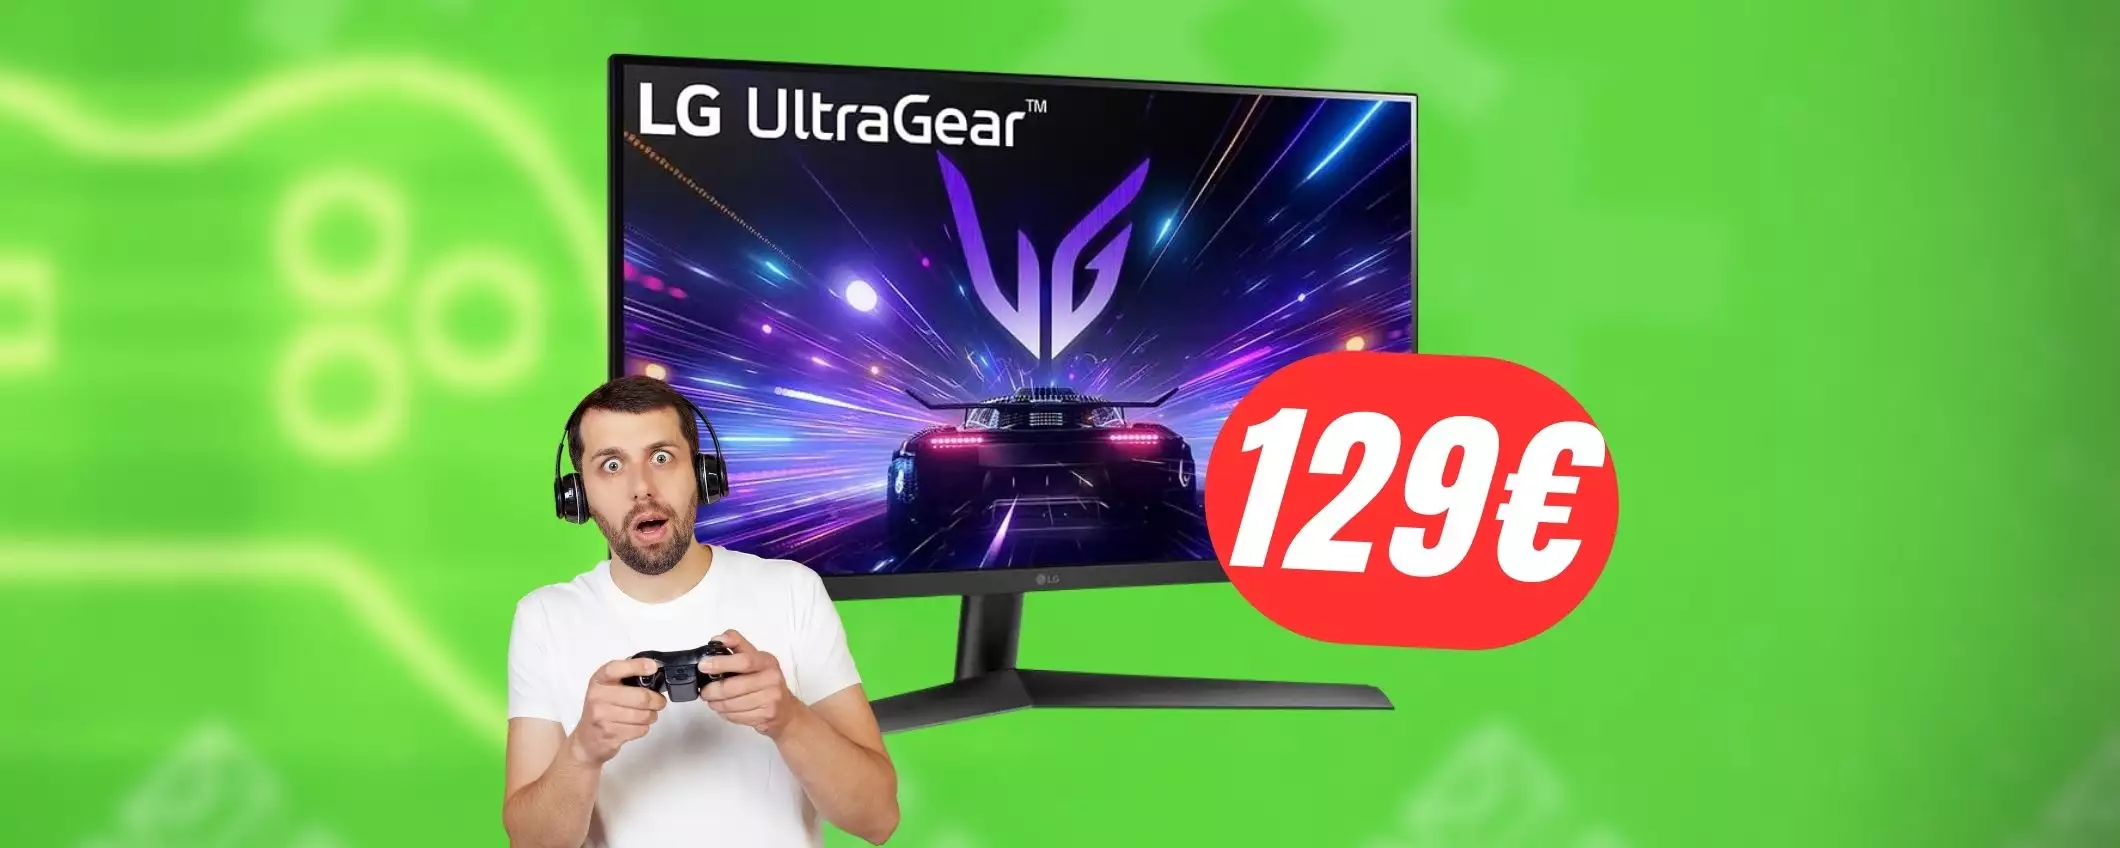 180Hz e 1080p: il MONITOR di LG perfetto per giocare precipita a 129€!